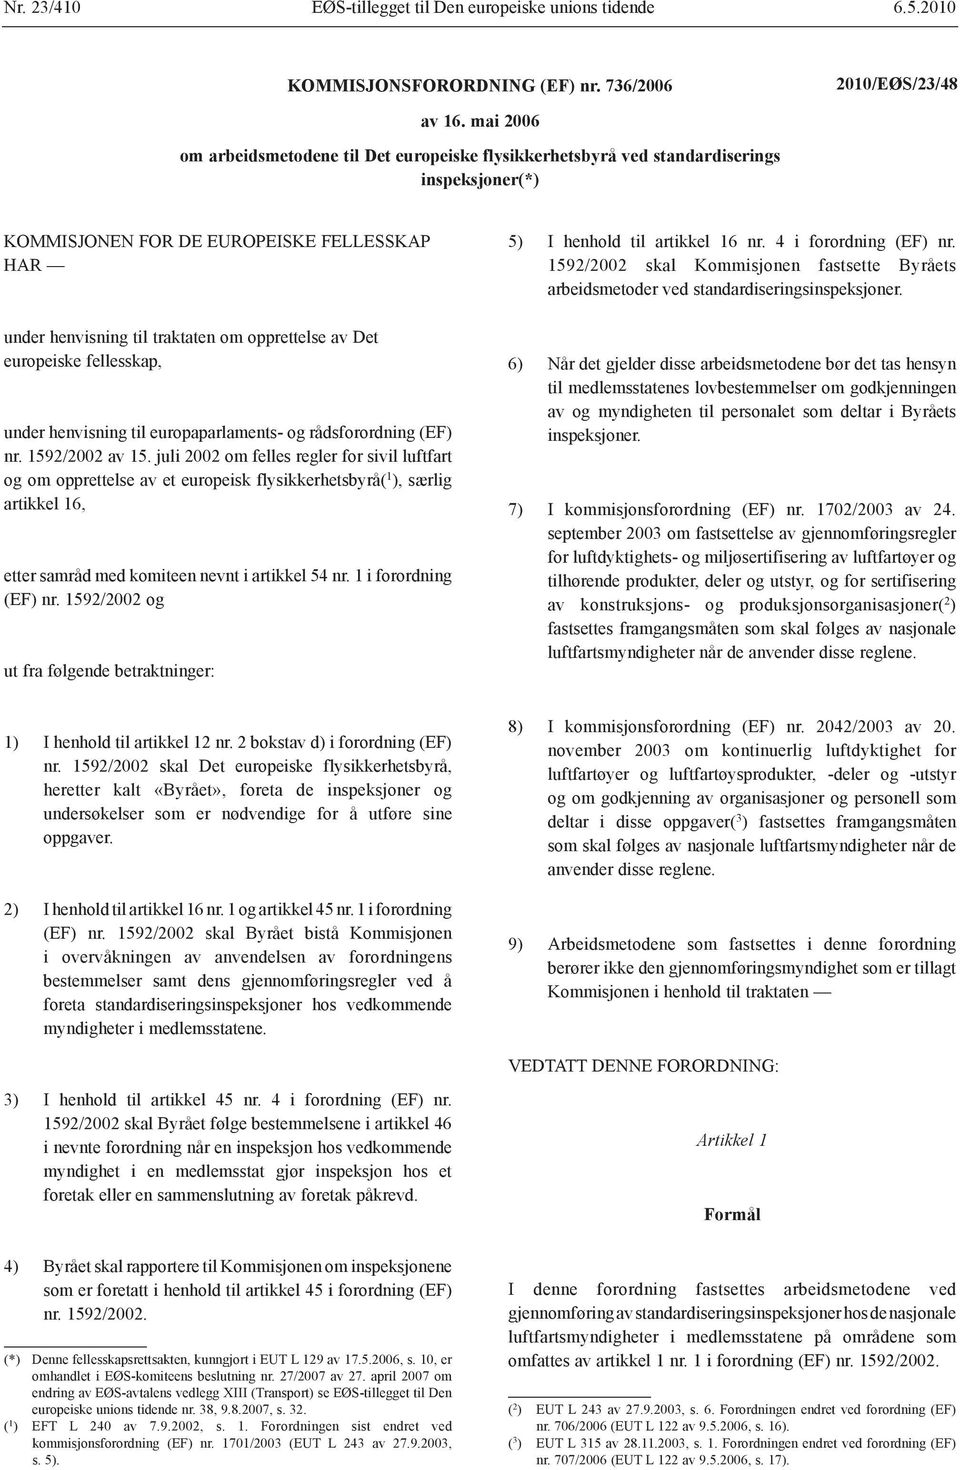 europeiske fellesskap, under henvisning til europaparlaments- og rådsforordning (EF) nr. 1592/2002 av 15.